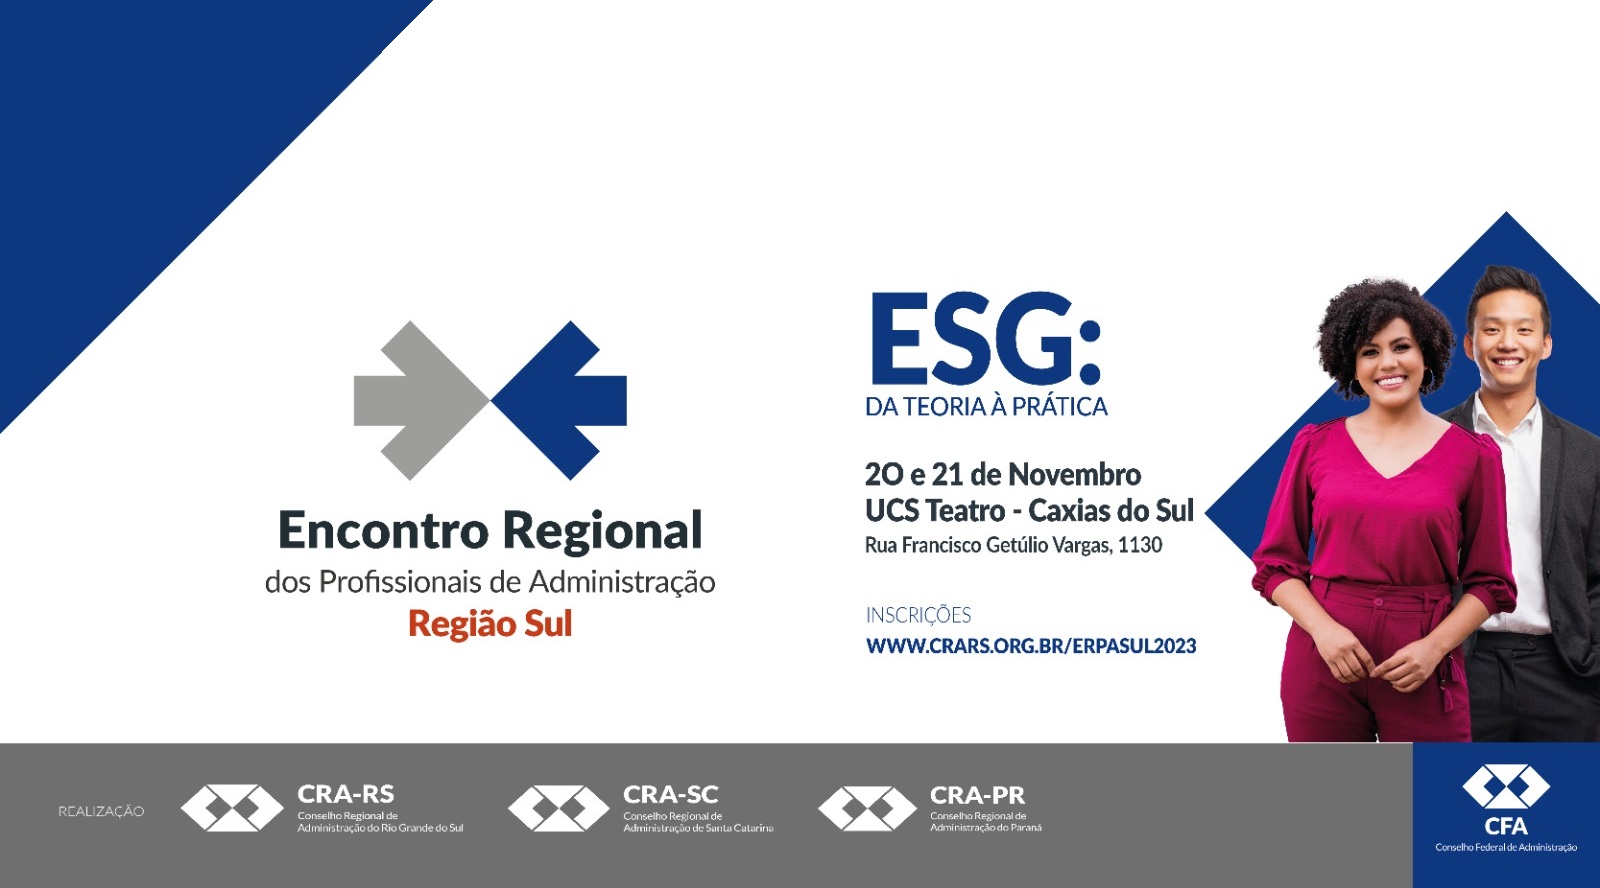 CRA-PR – Conselho Regional de Administração do Paraná